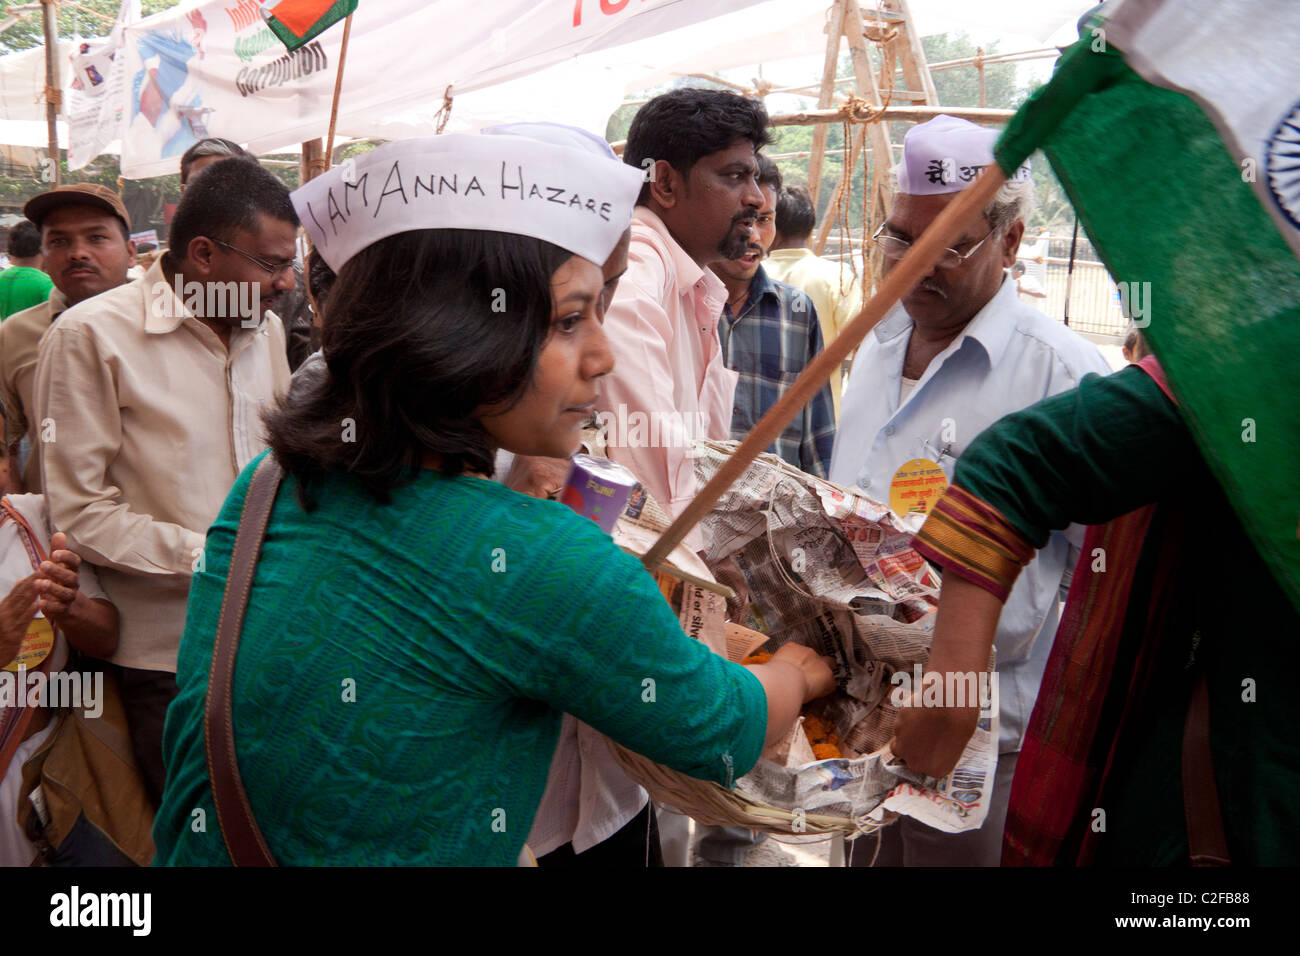 Les partisans d'Anna Hazare célébrant la victoire de l'Azad Maidan à Mumbai (Bombay), Maharashtra, Inde. Banque D'Images